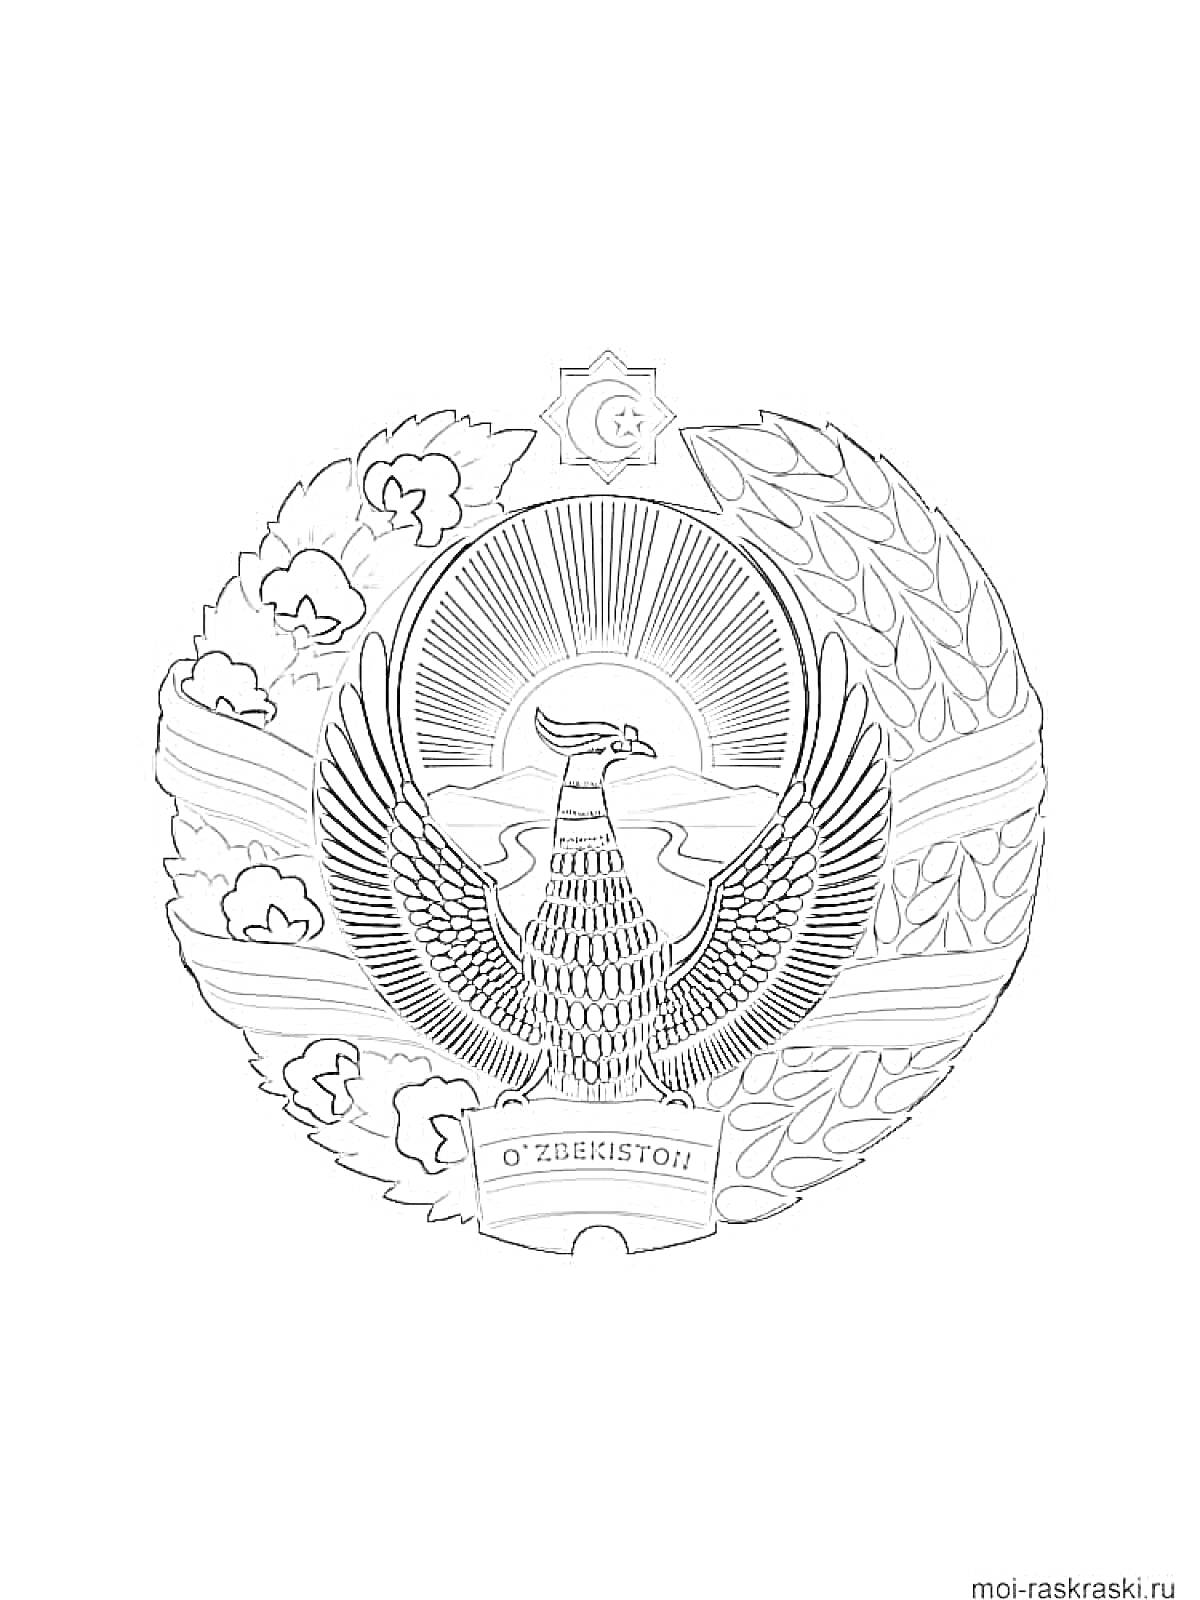 Герб Узбекистана с солнцем, птицей Хумо, хлопковыми цветами, колосьями пшеницы, полумесяцем и звездой